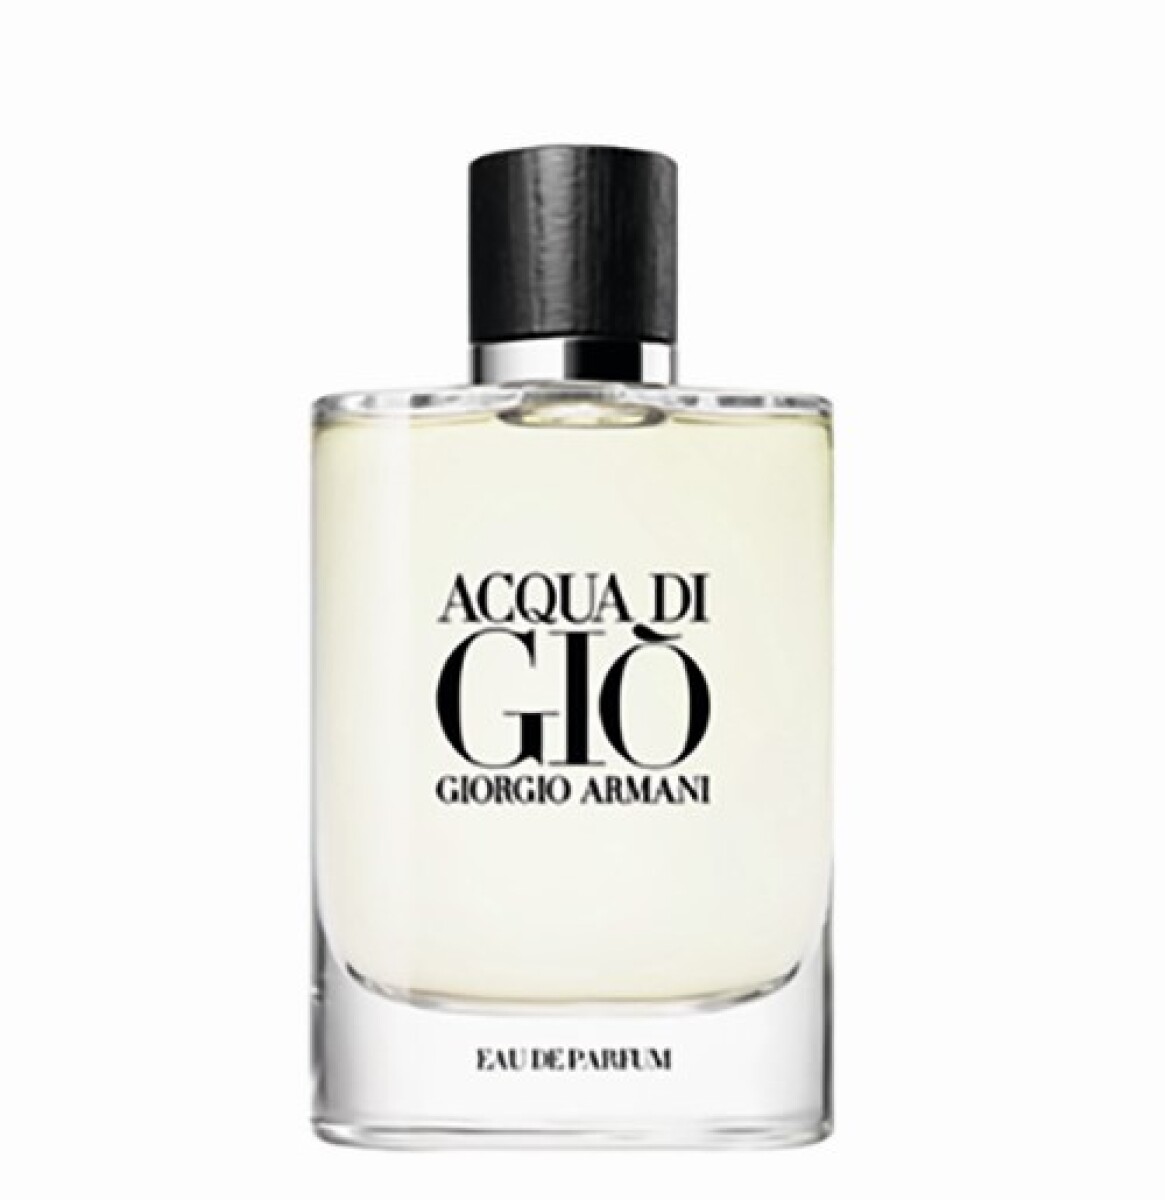 Acqua di Gio eau de parfum Giorgio Armani - 125 ml 